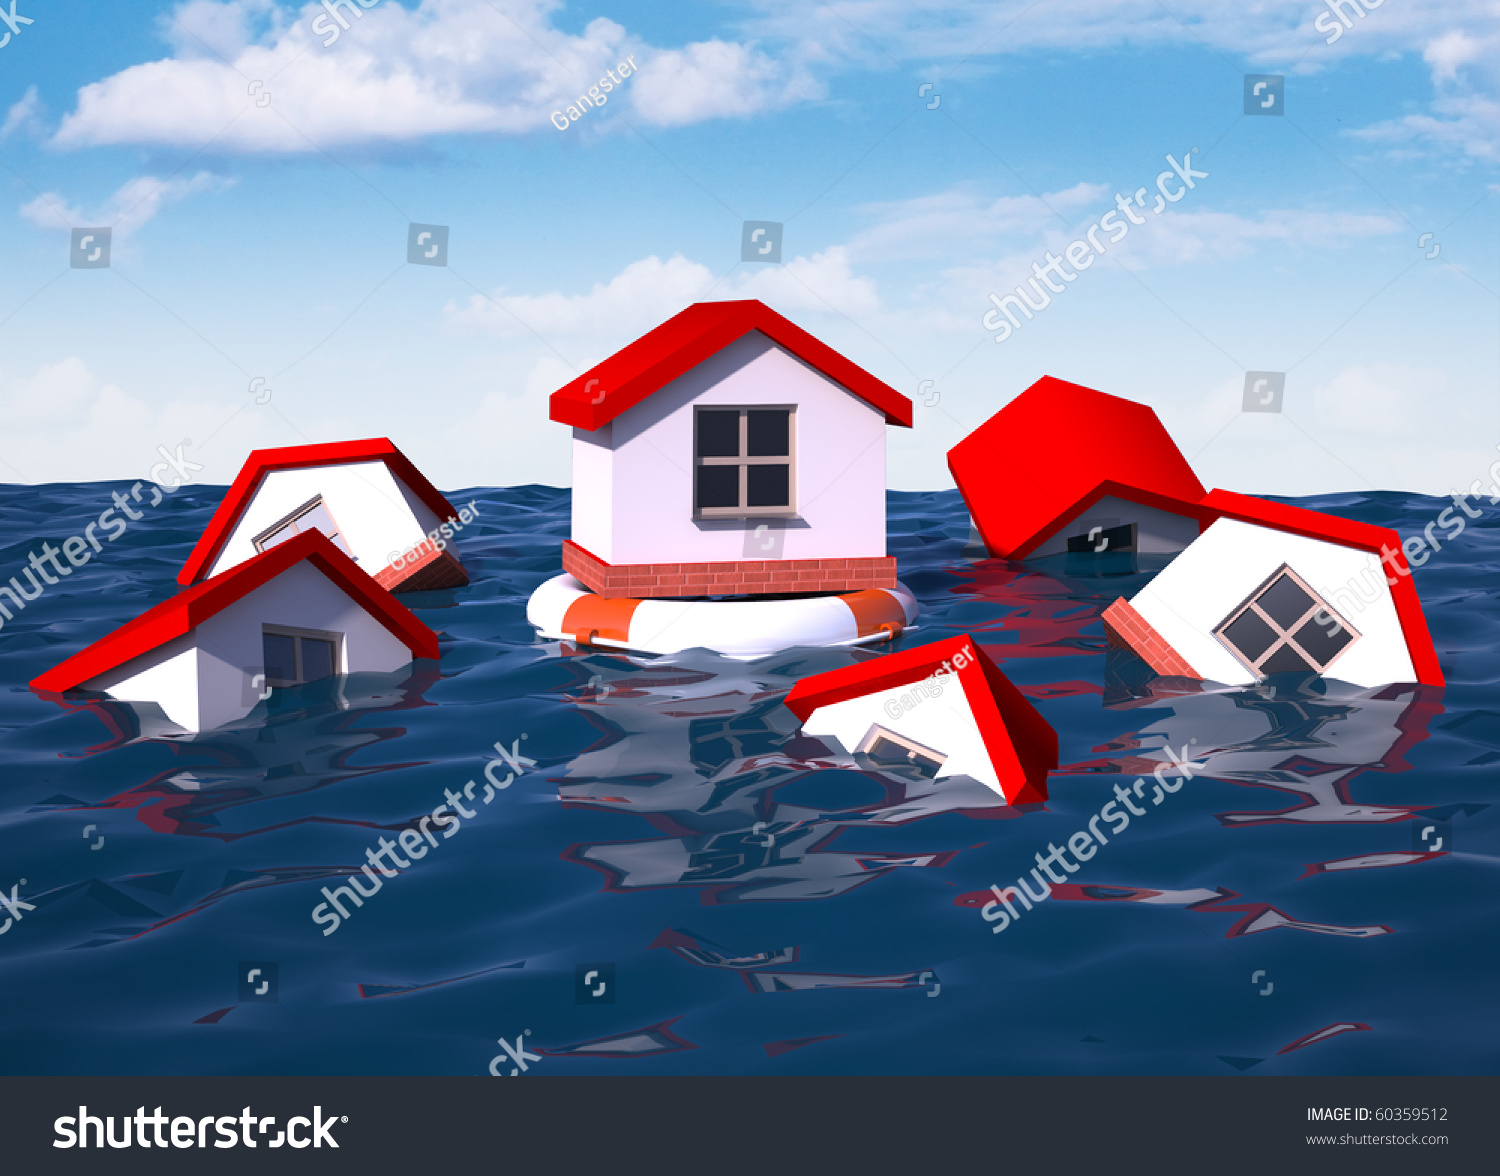 Спасательный дом. Страхование от наводнения. Страхование жилья от паводка. Страхование имущества от затопления. Страхование имущества от наводнения.